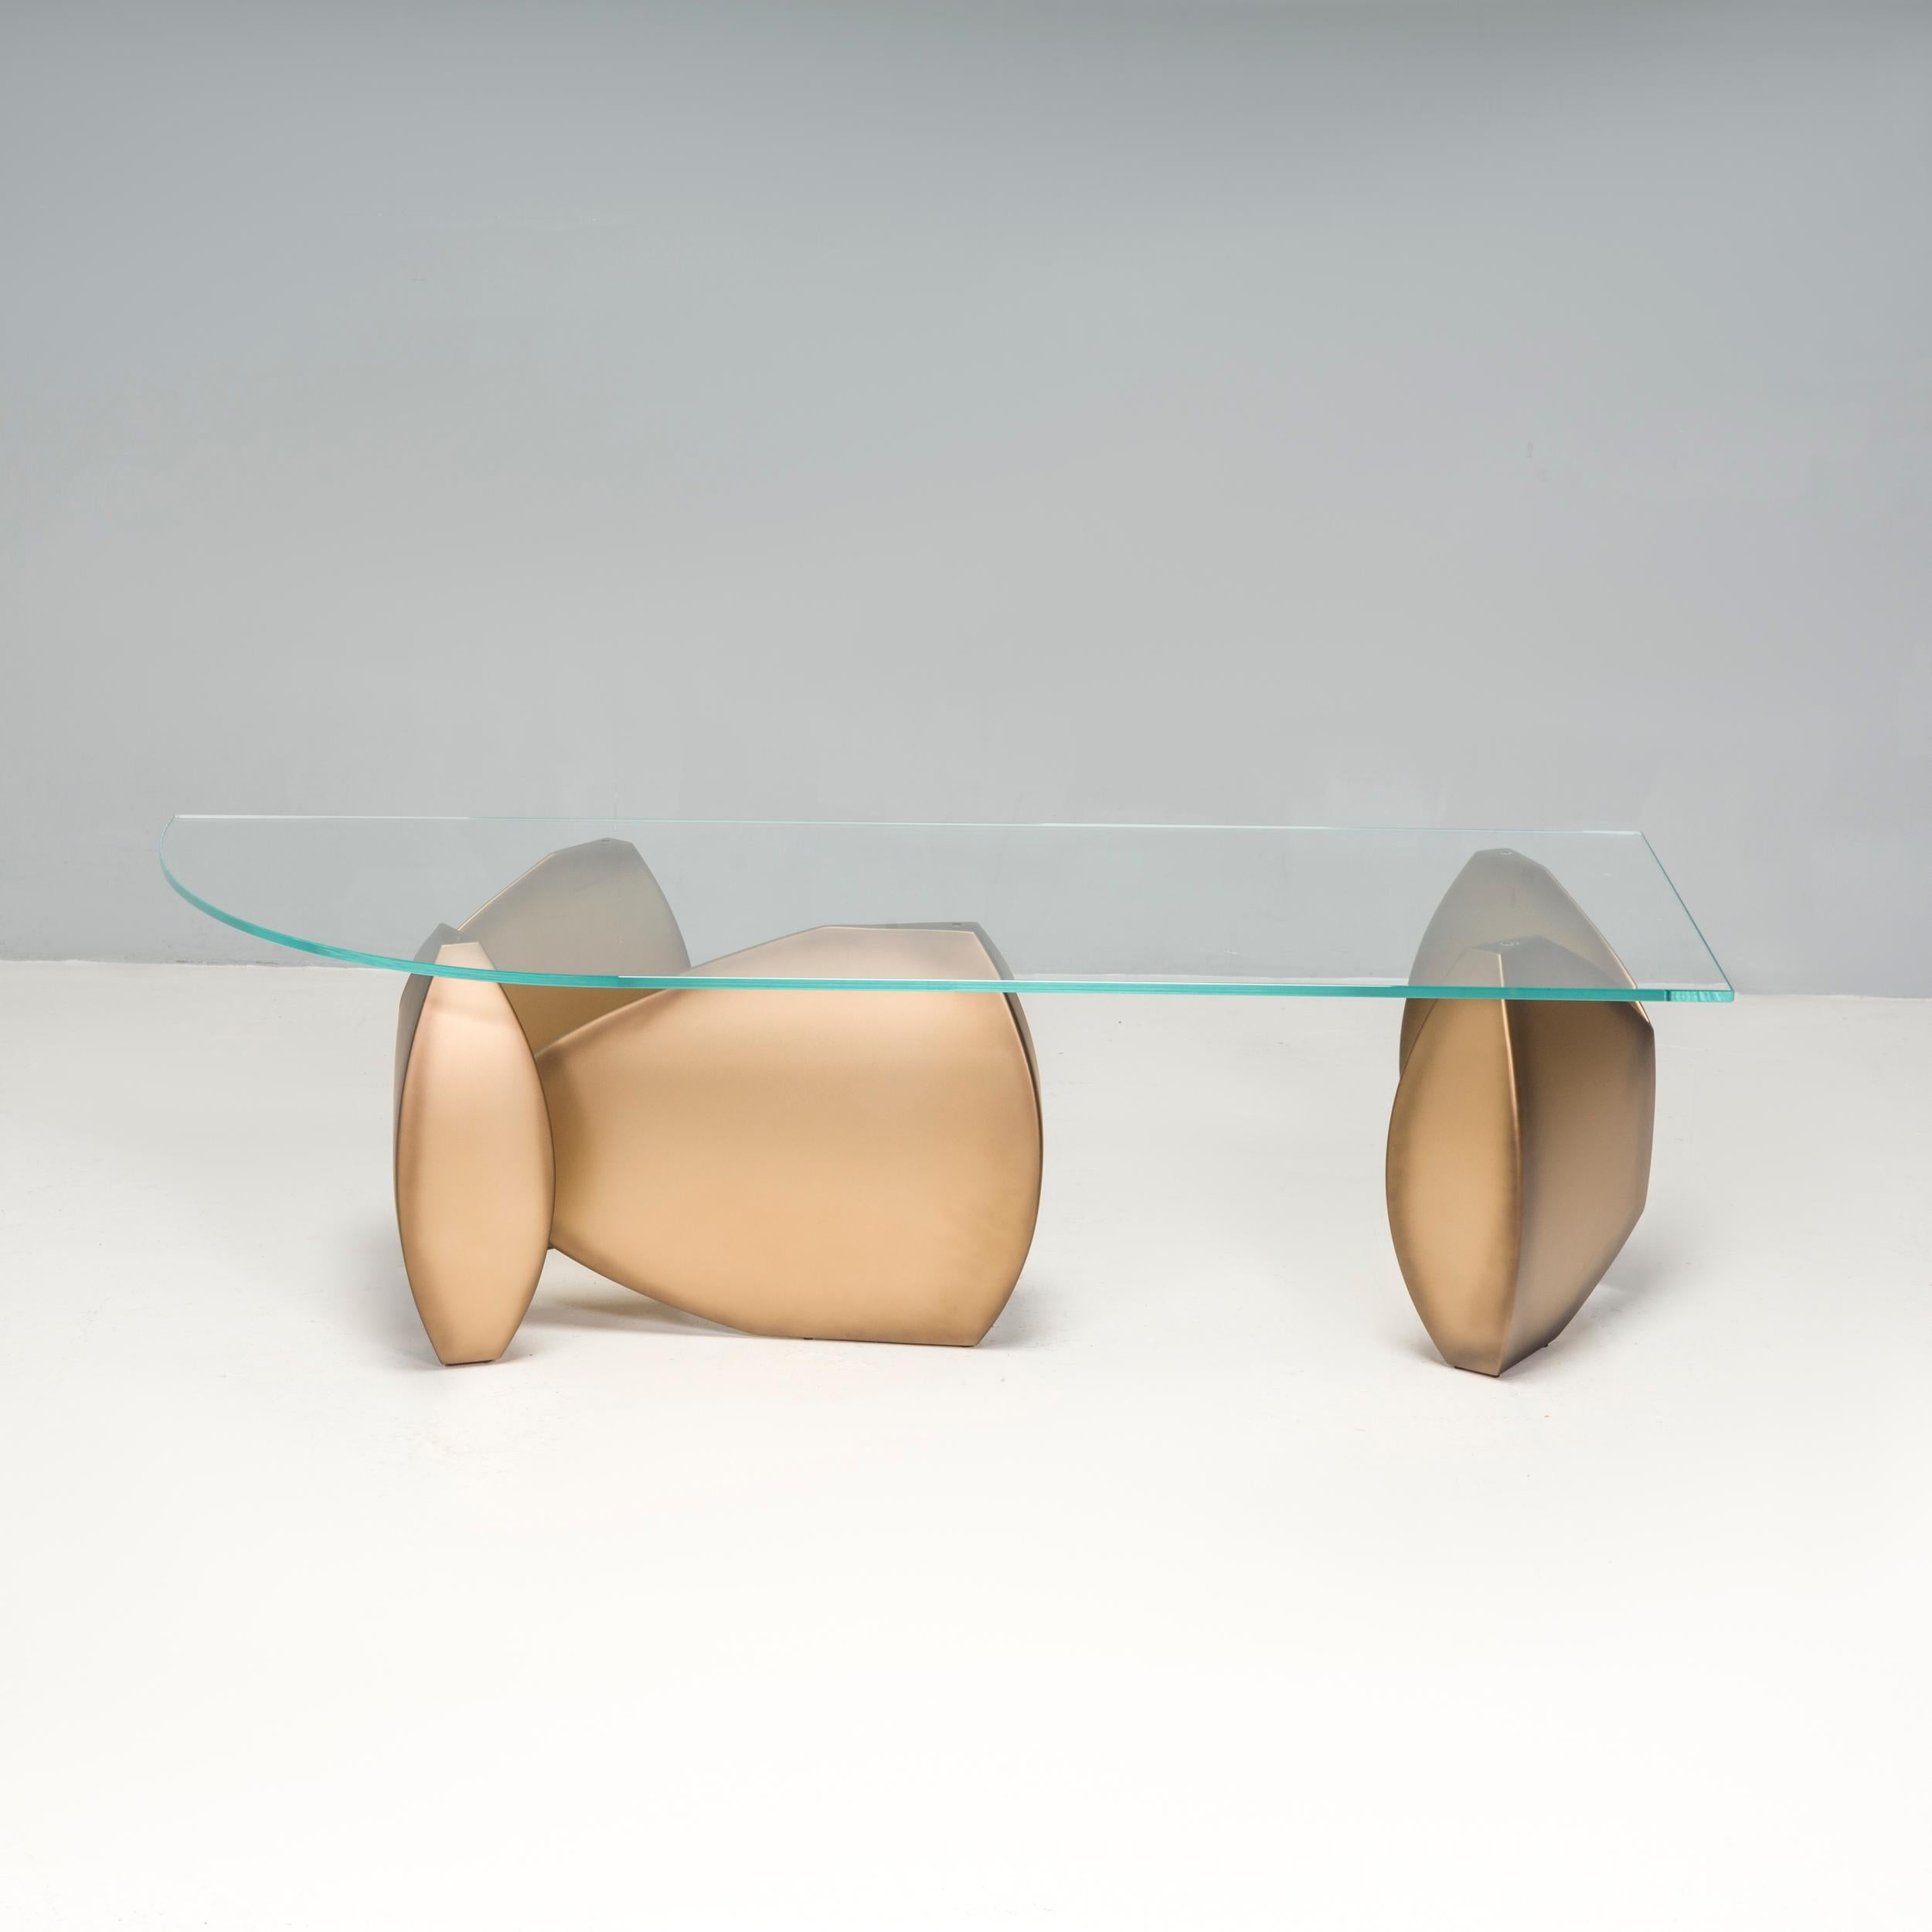 Les meubles Evan Lewis sont fabriqués à la main, un par un, dans l'atelier Evan Lewis de Chicago, dans l'Illinois.  Fondée en 1991, cette collection de meubles sculpturaux s'inspire de motifs classiques, réadaptés au design contemporain. 

La table